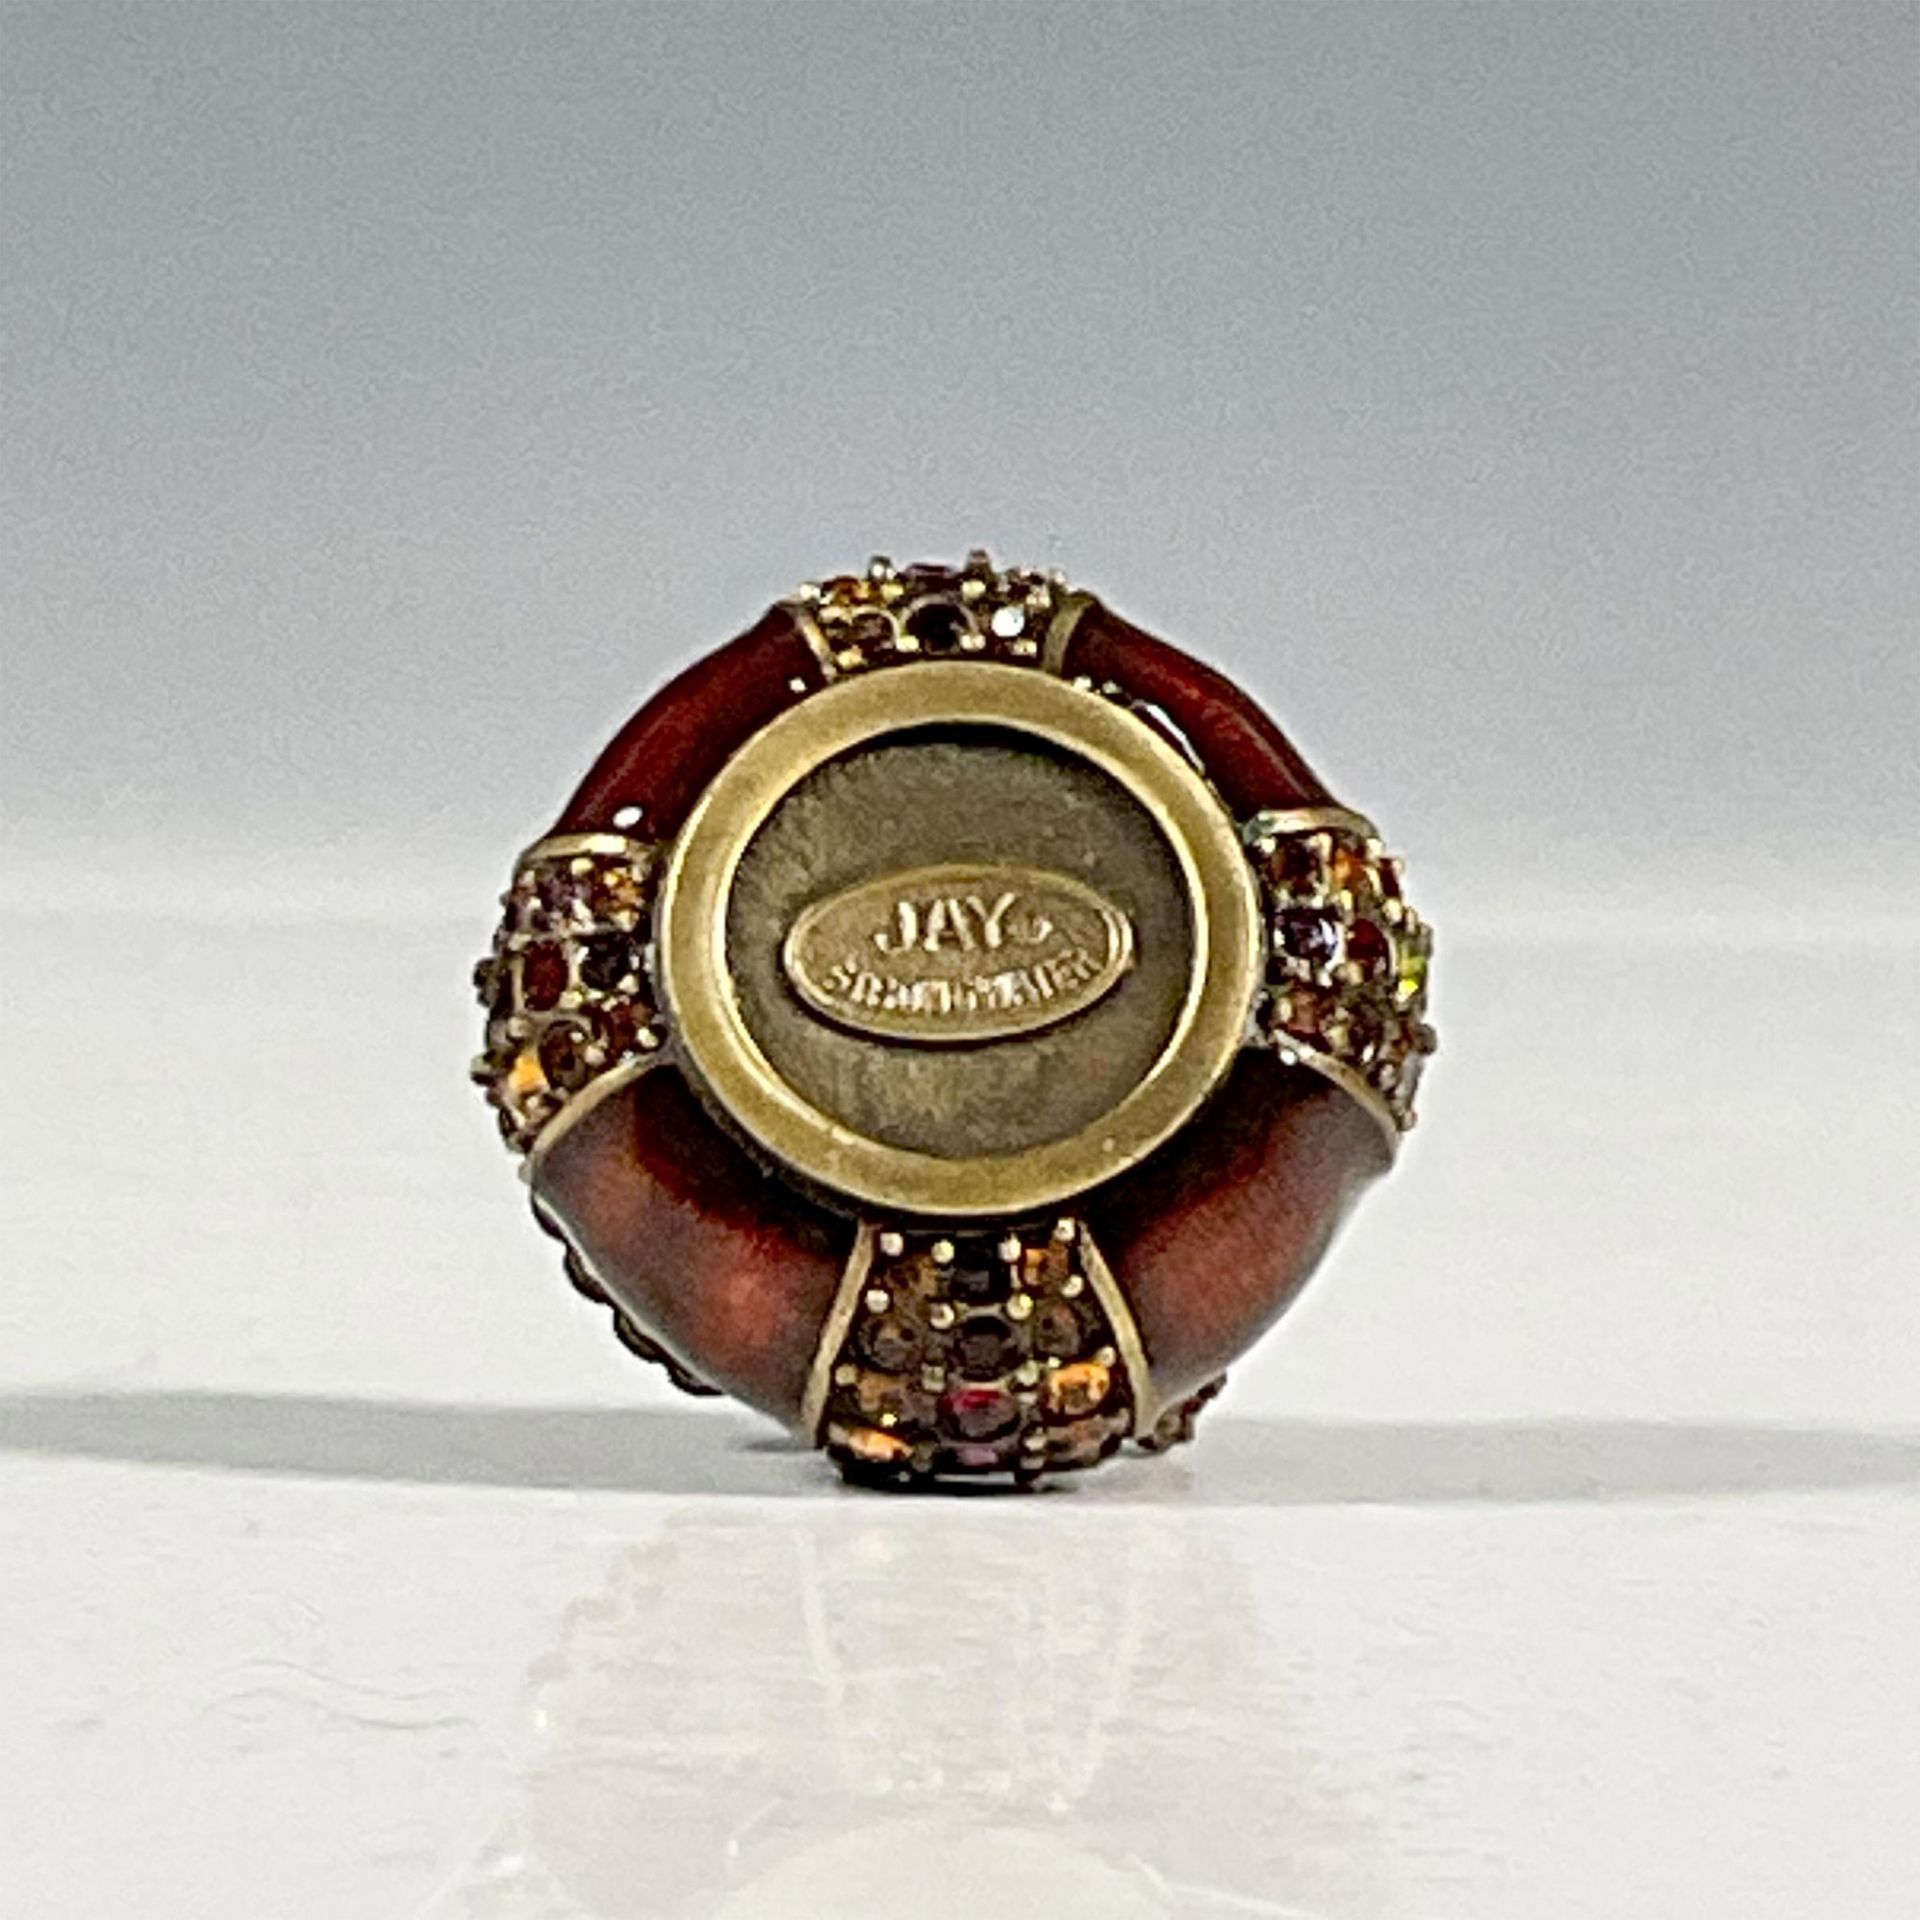 Jay Strongwater Jeweled Round Box, Inez - Image 4 of 5